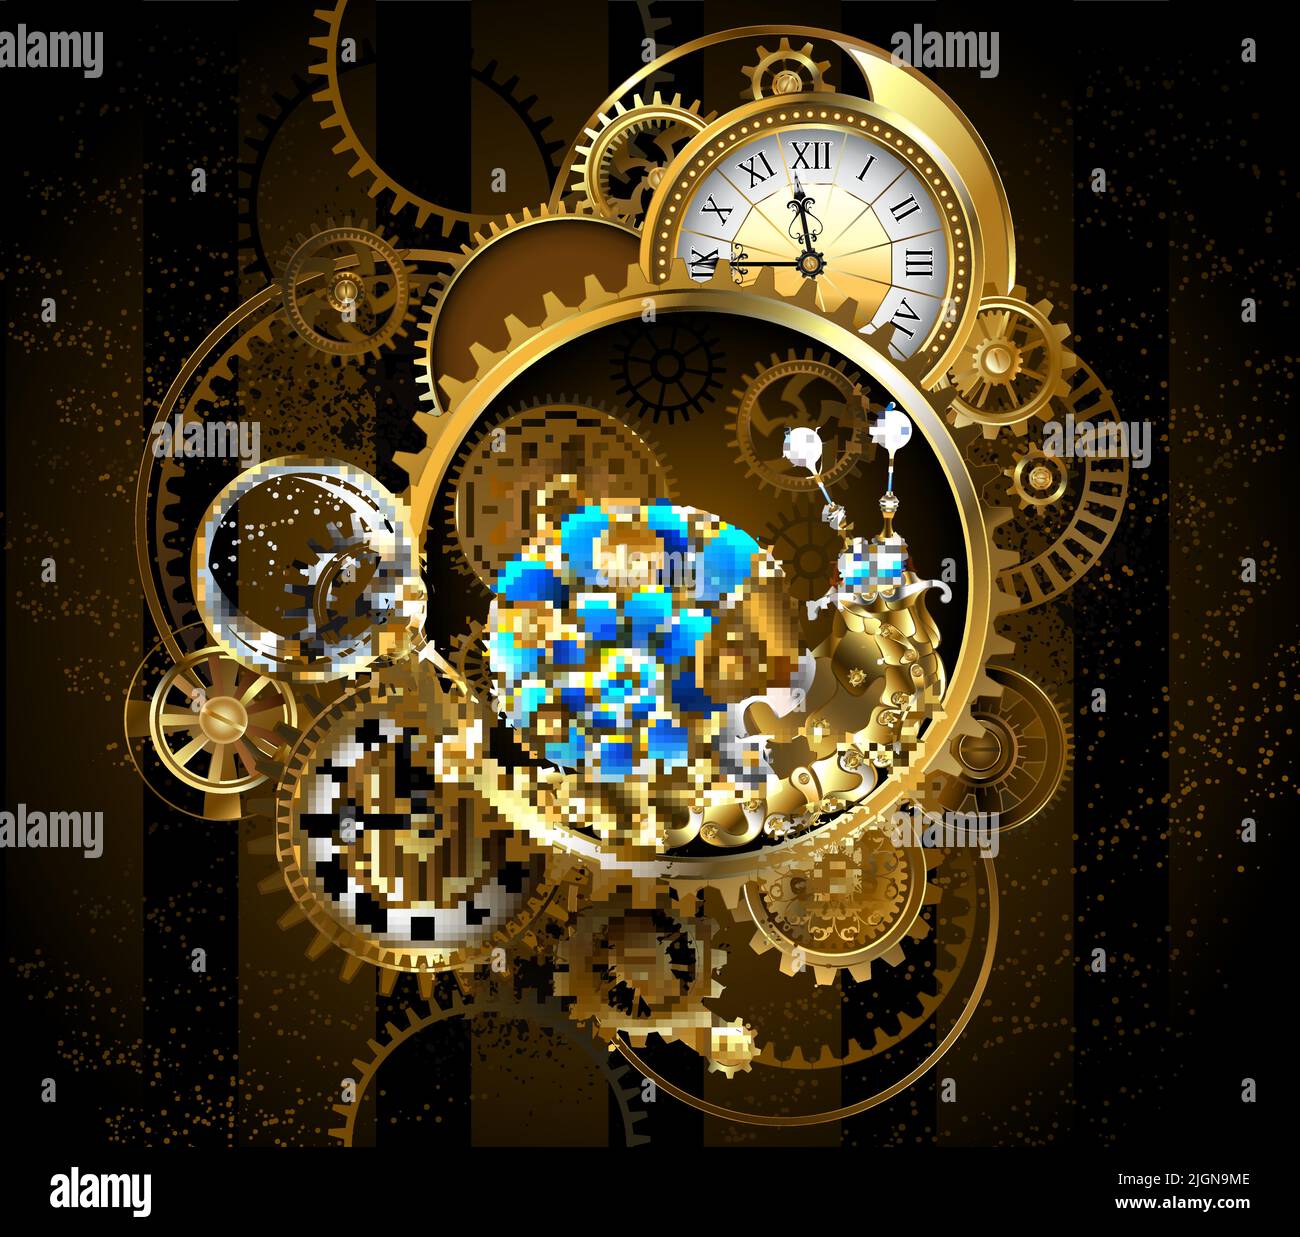 Relojería de relojes antiguos, engranajes de latón y oro, lente de aumento, ralentizado por caracol mecánico con concha de vidrio azul. Estilo steampunk. Ilustración del Vector